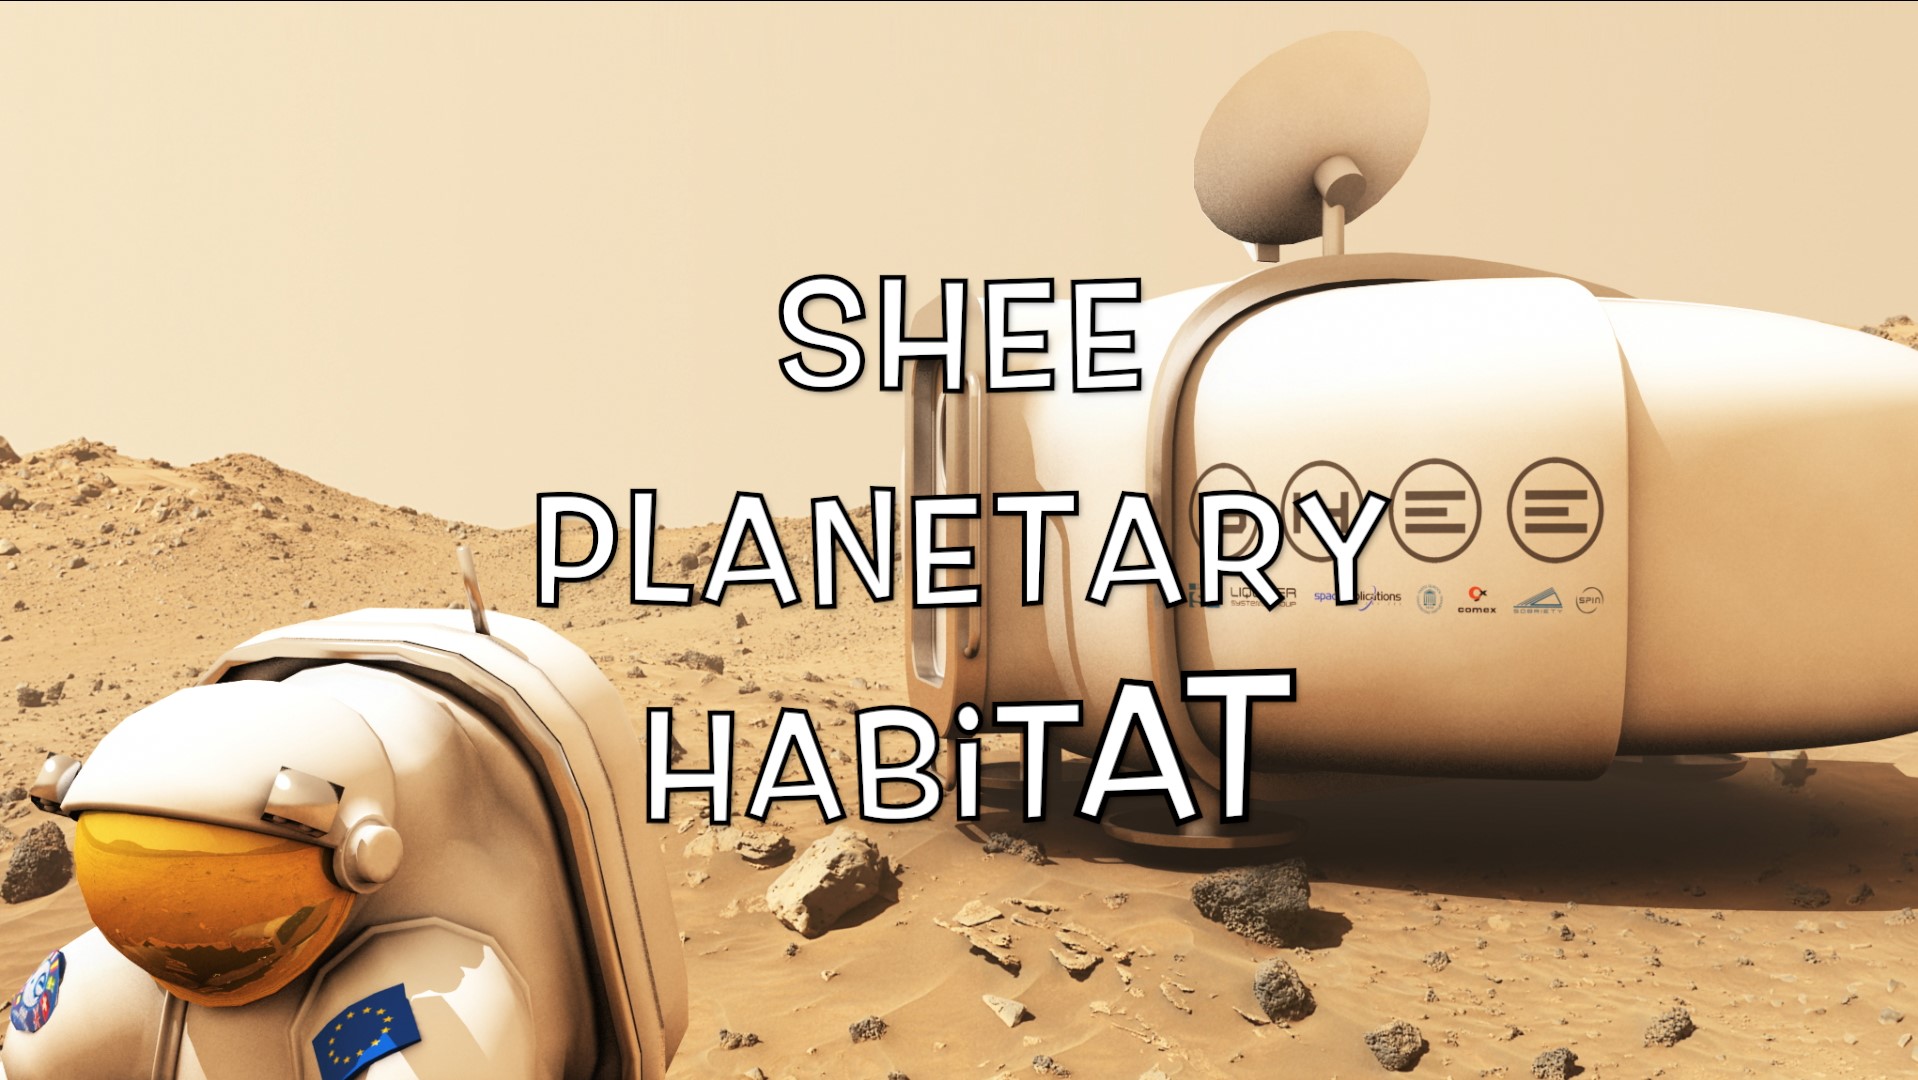 Shee planetary habitat